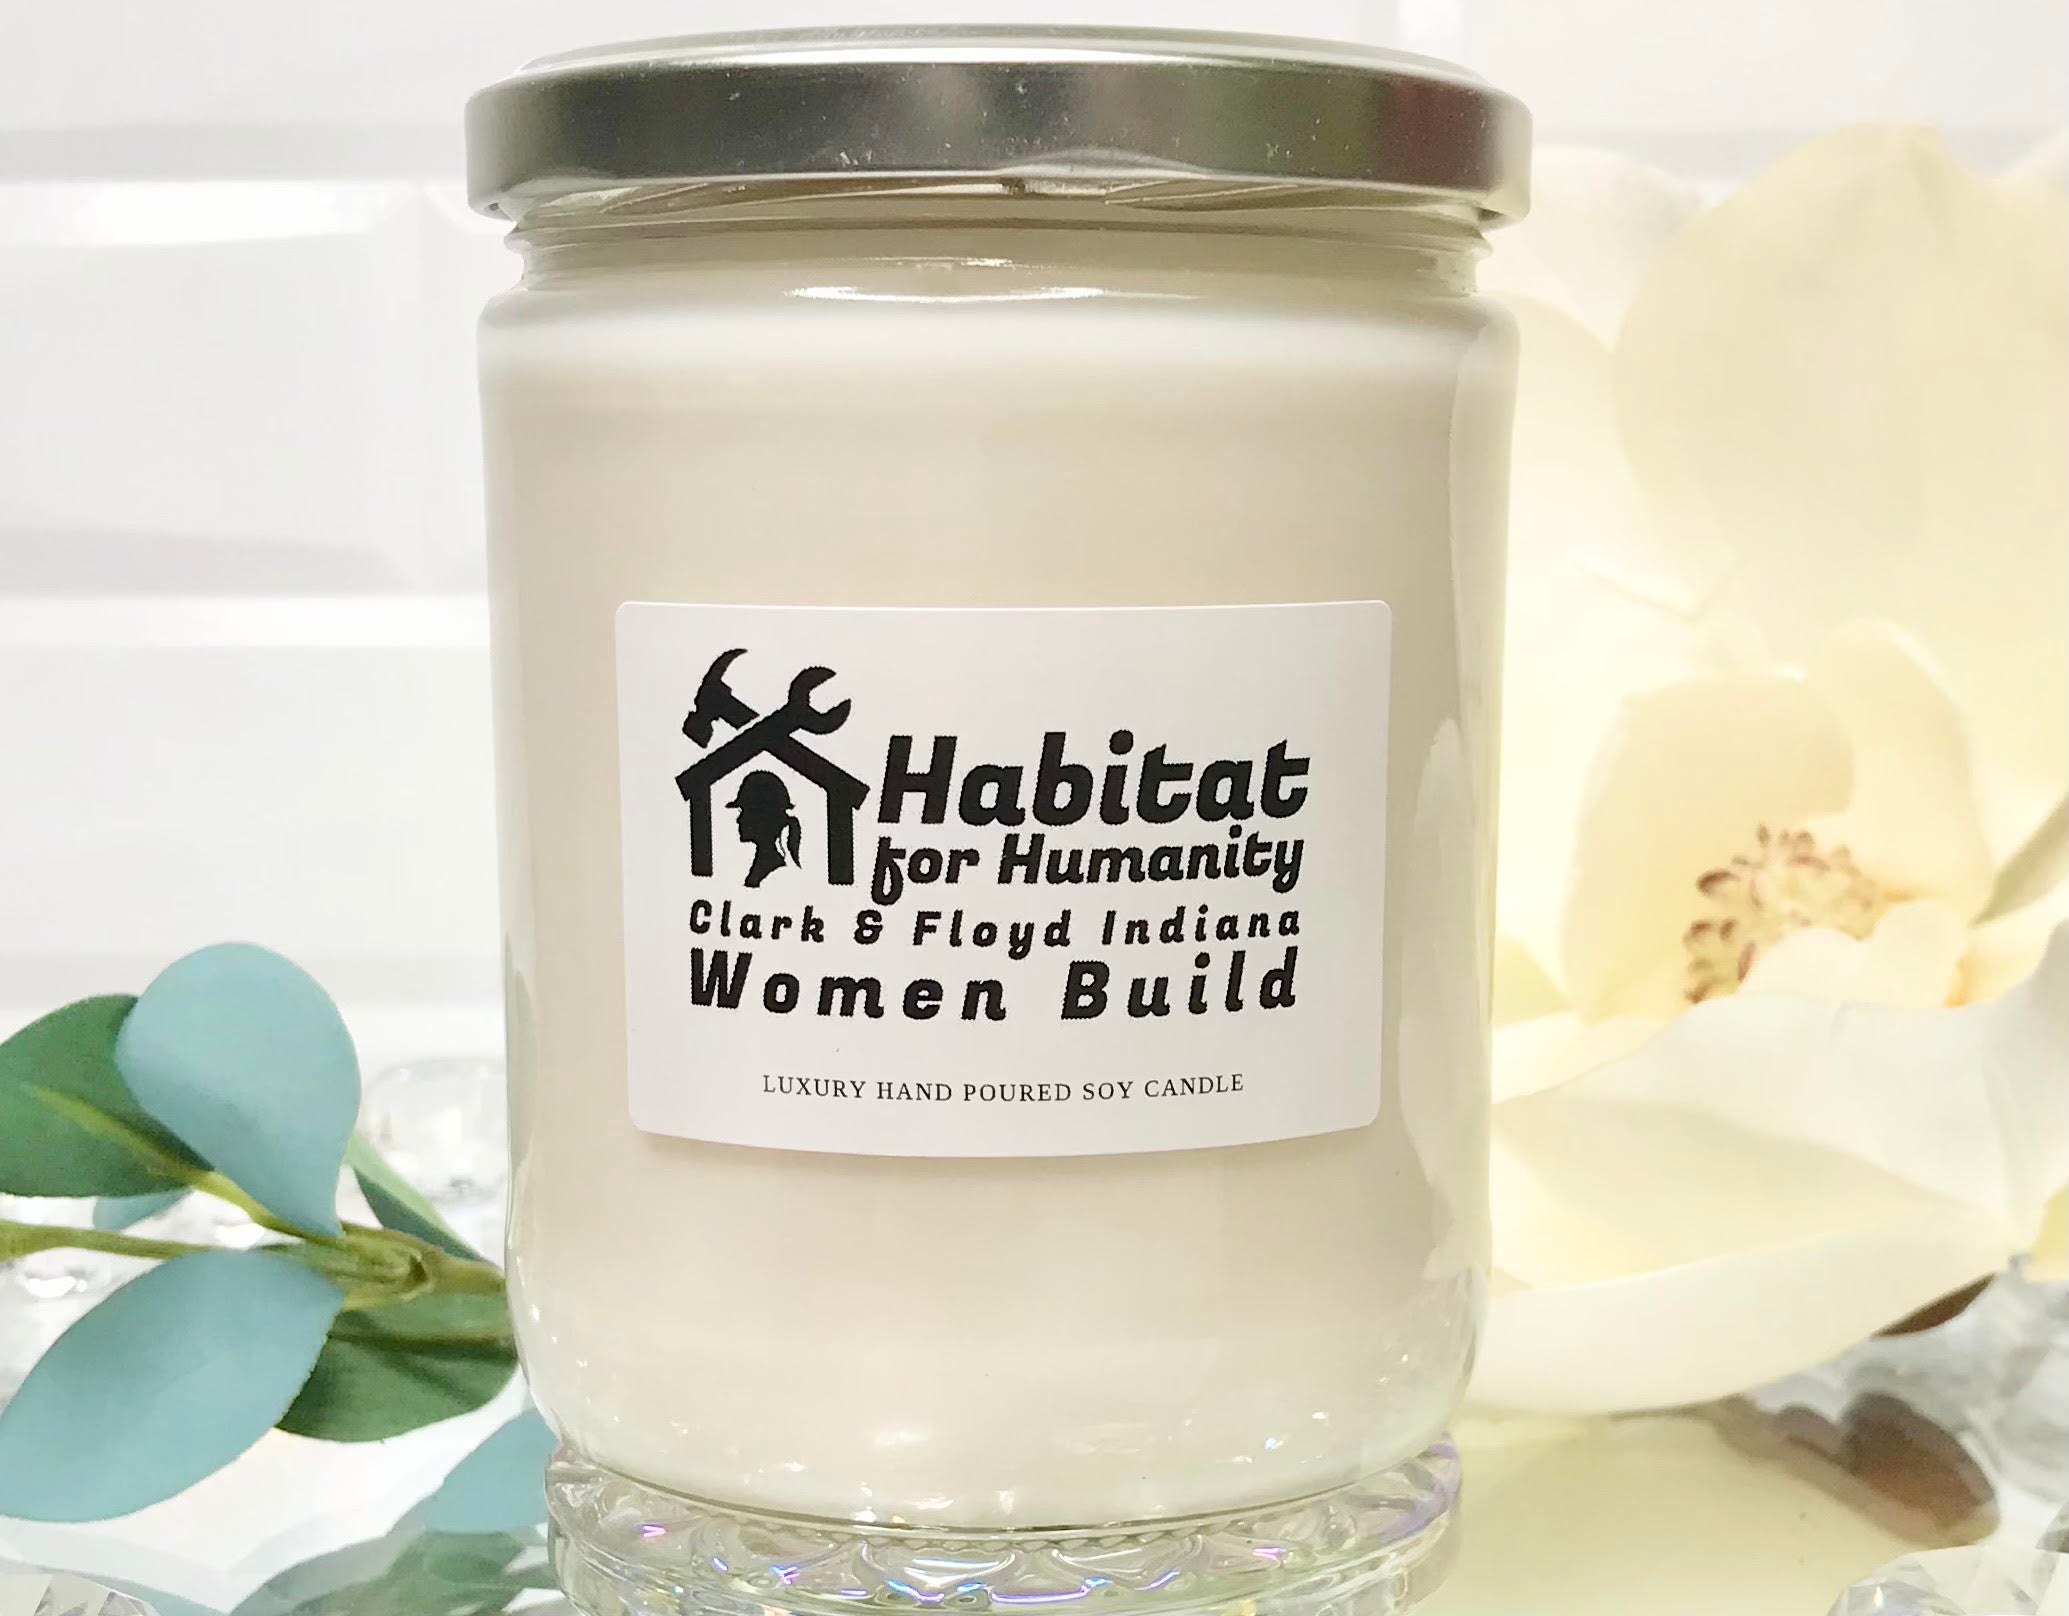 NETTE Pearl Dust Scented Candle – Beautyhabit